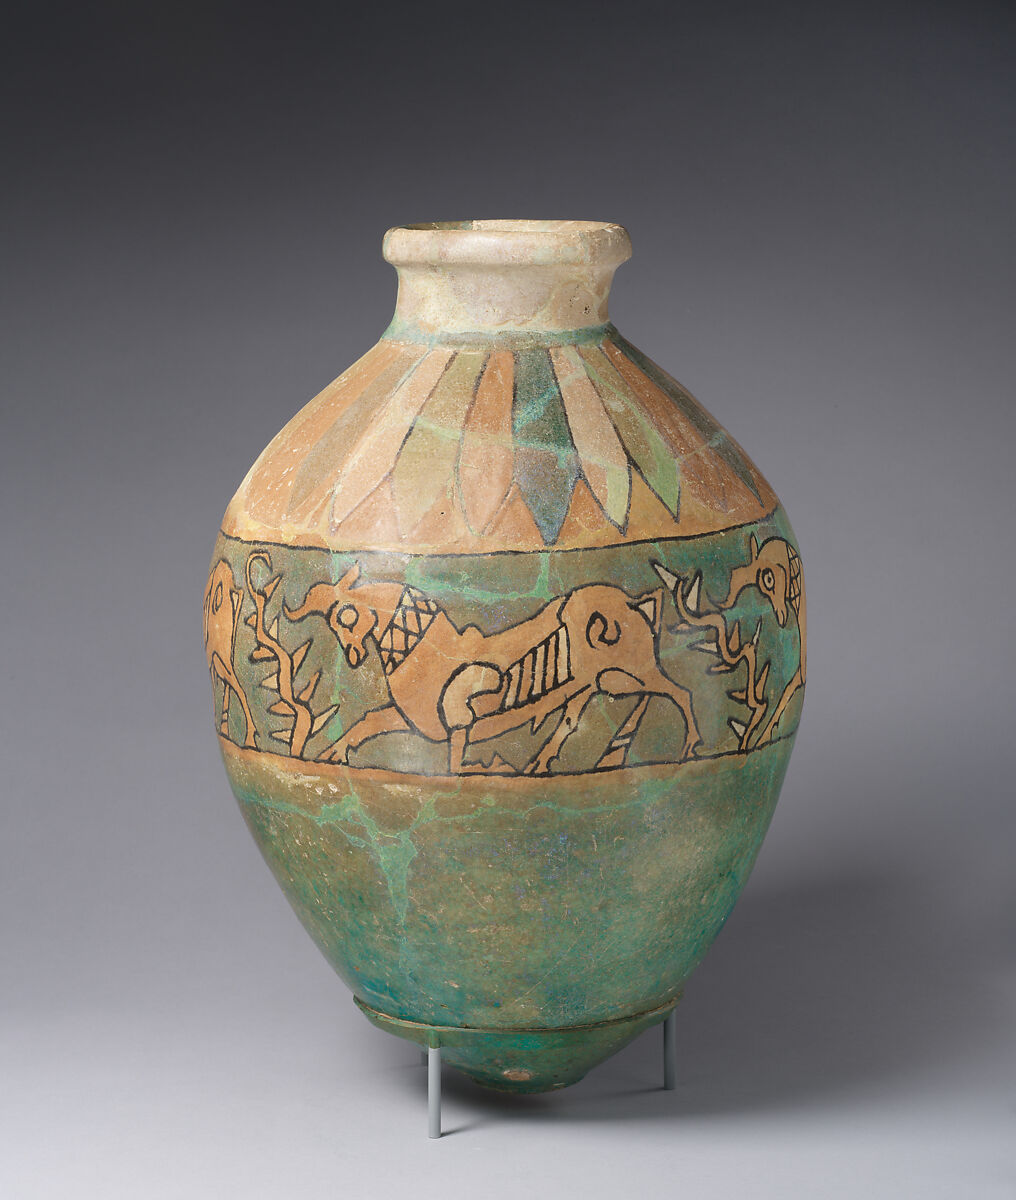 Jar with a frieze of bulls, Glazed ceramic, Iran